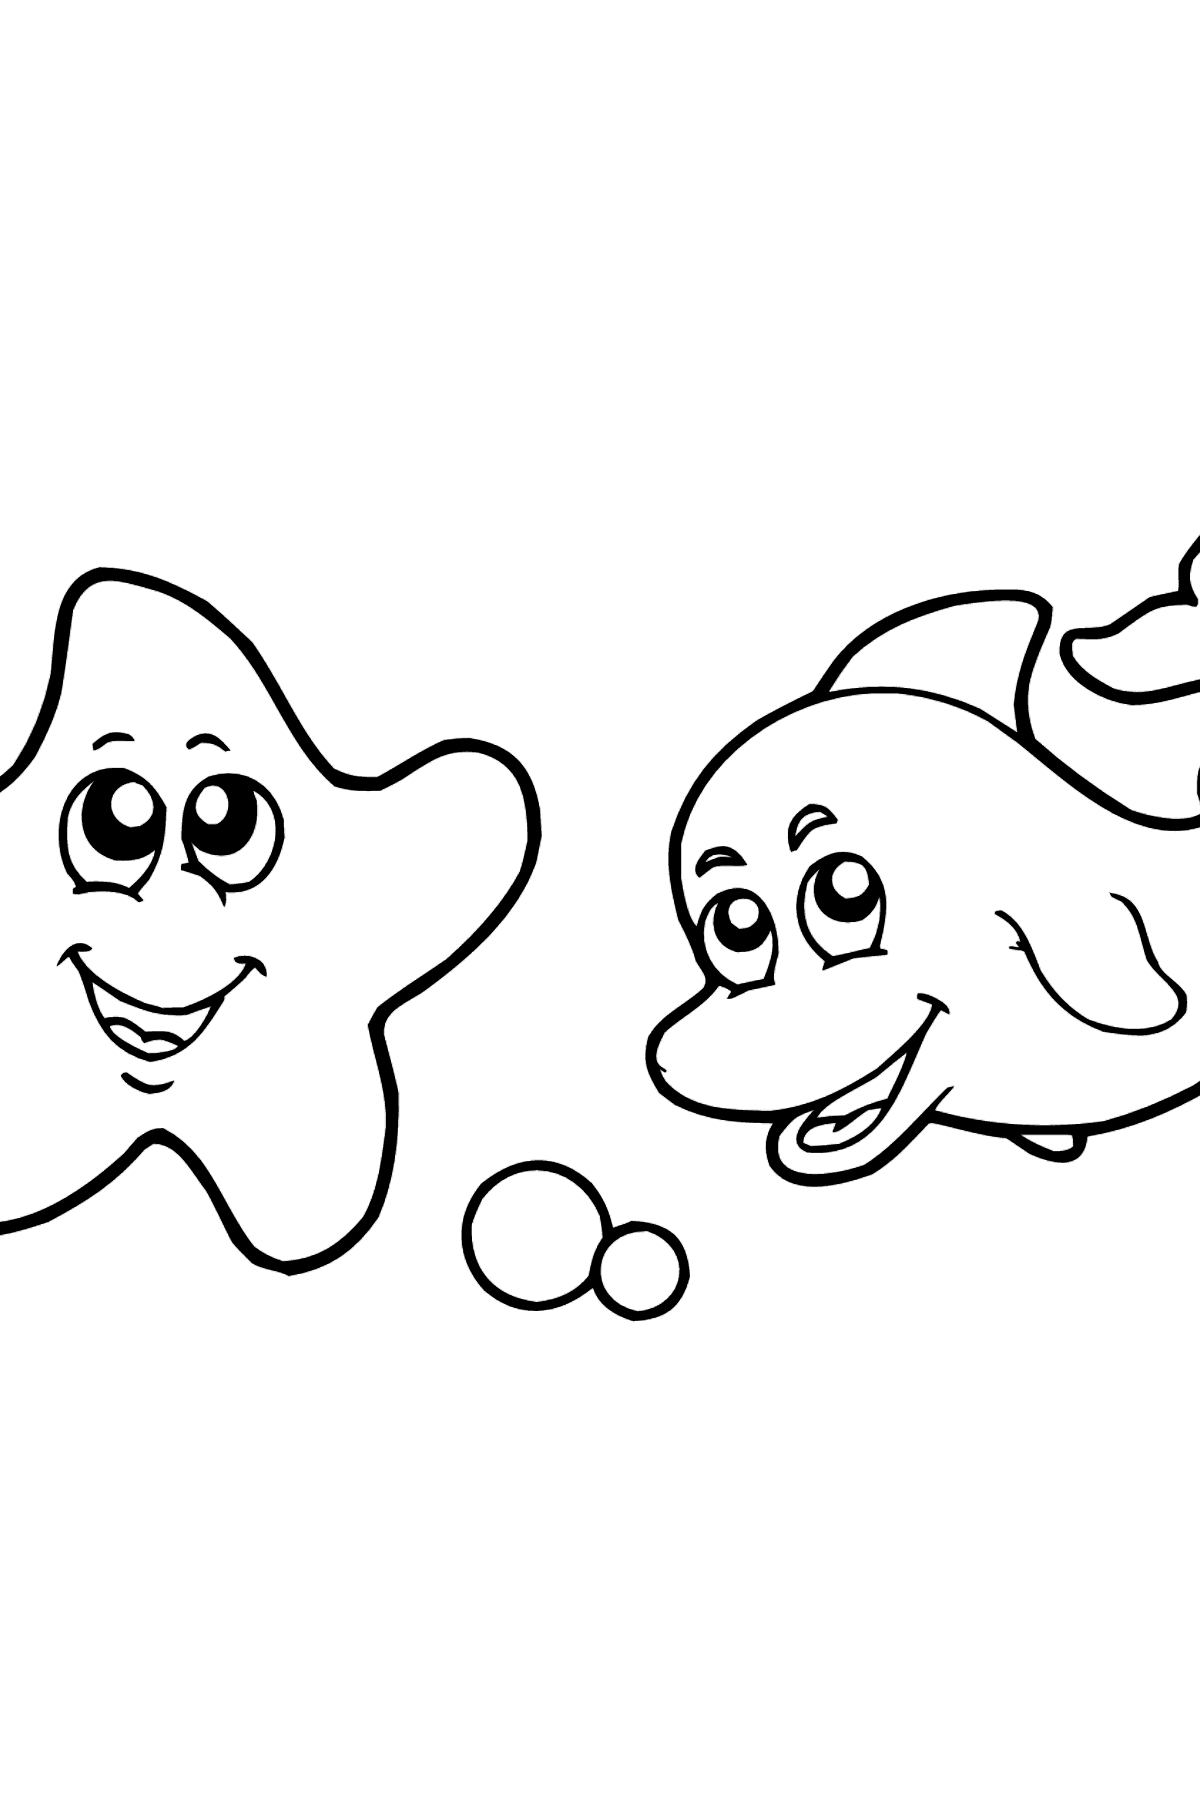 Coloriage - Dauphin et étoile de mer - Coloriages pour les Enfants